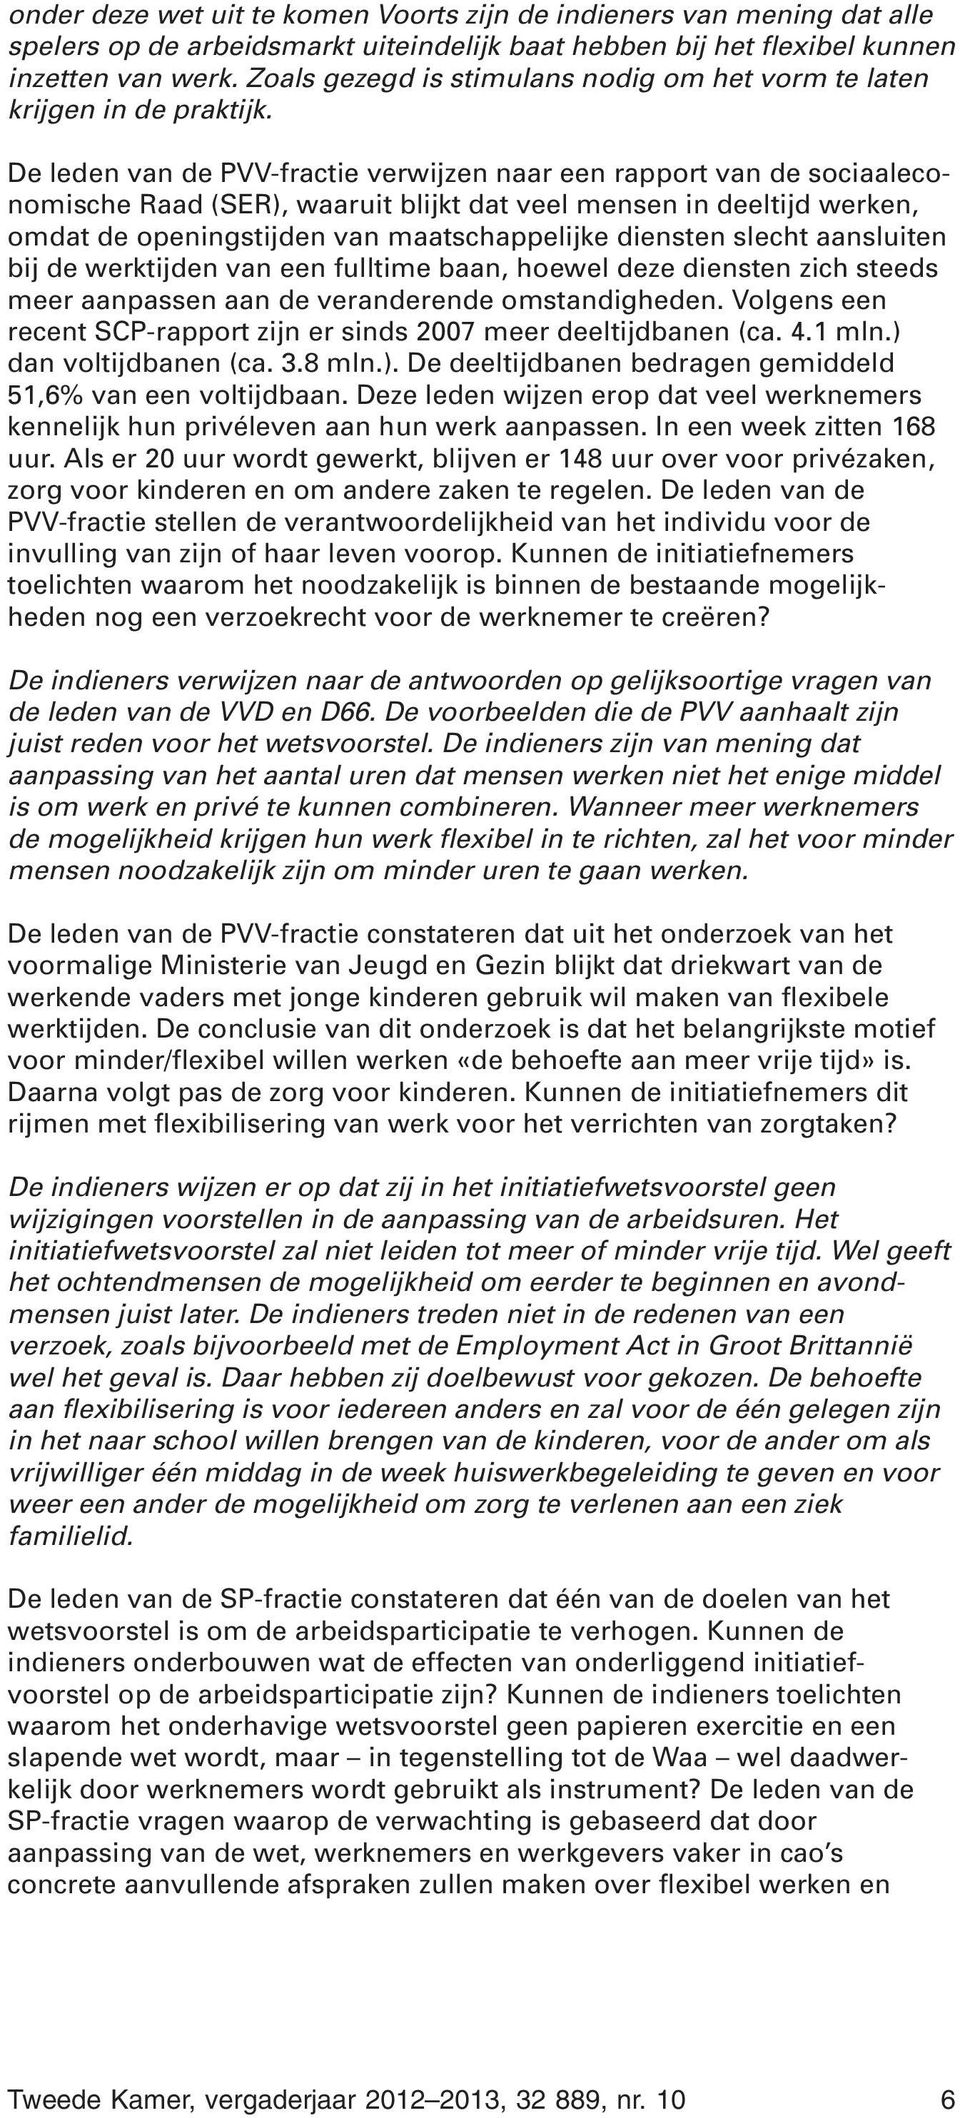 De leden van de PVV-fractie verwijzen naar een rapport van de sociaaleconomische Raad (SER), waaruit blijkt dat veel mensen in deeltijd werken, omdat de openingstijden van maatschappelijke diensten